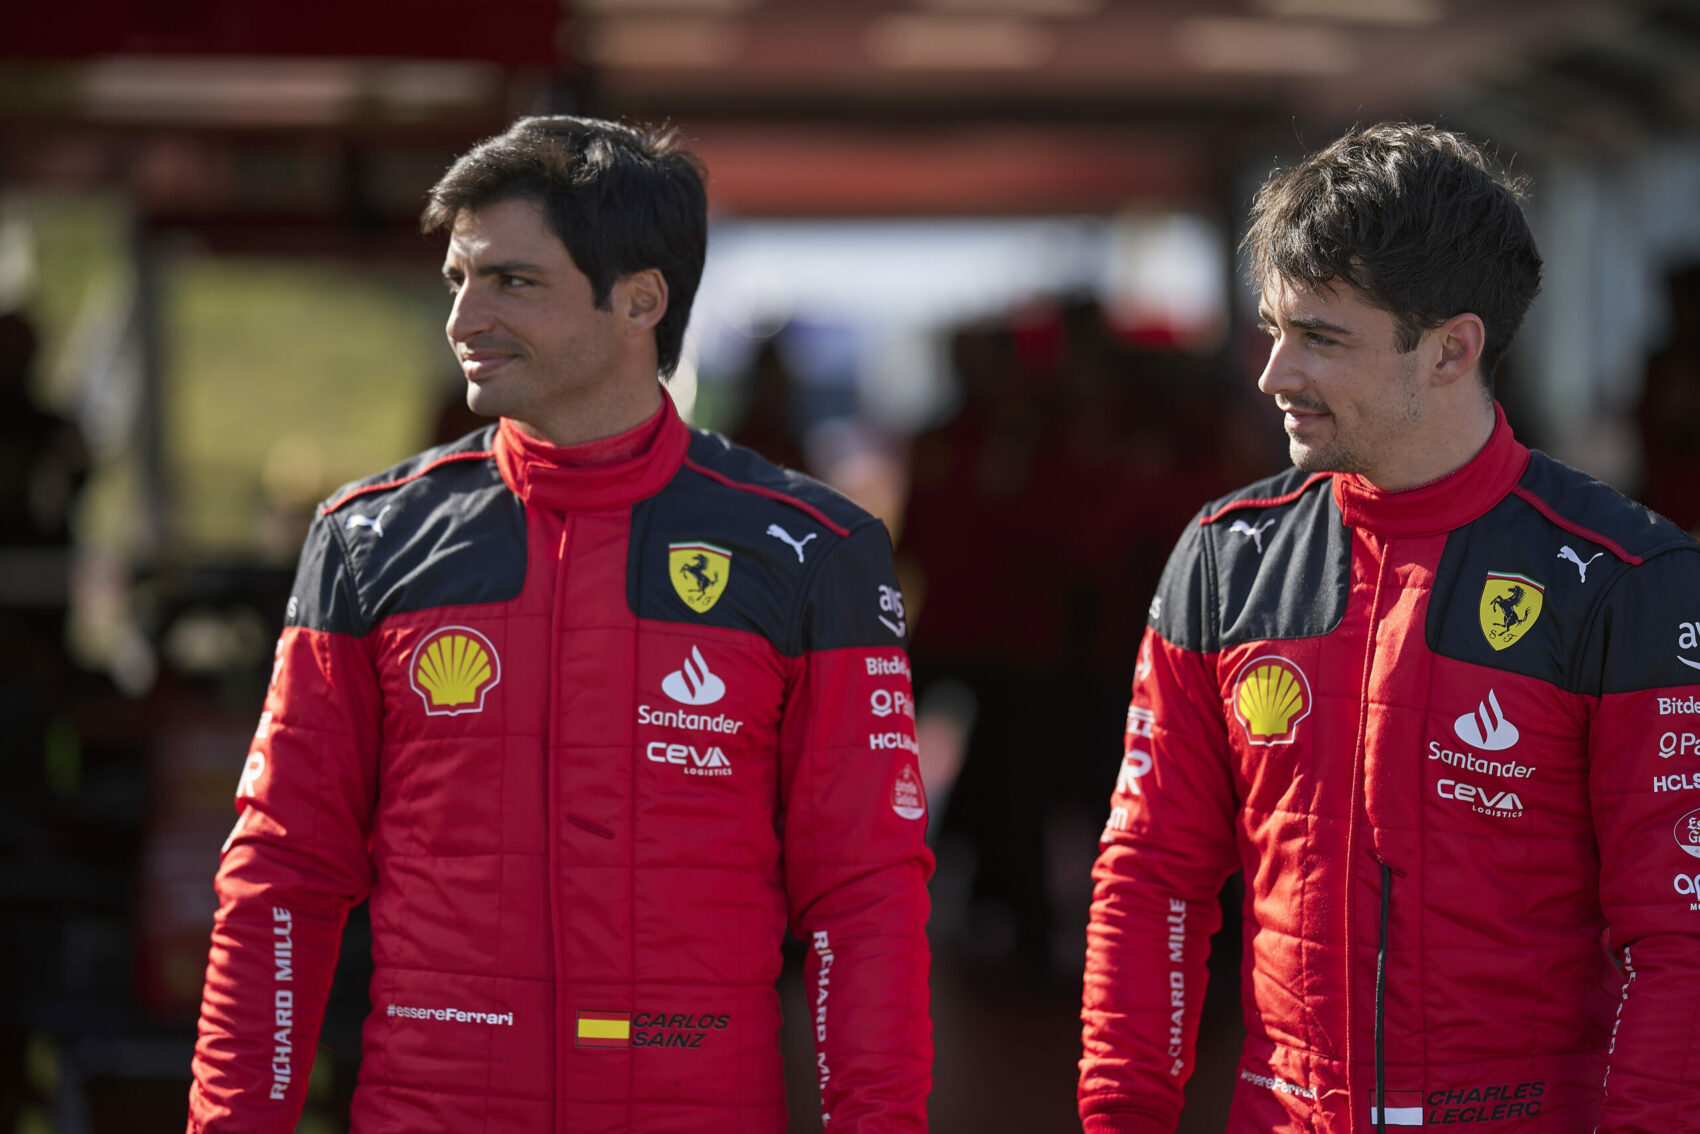 Charles Leclerc, Carlos Sainz, Fiorano, autóbemutató, Scuderia Ferrari